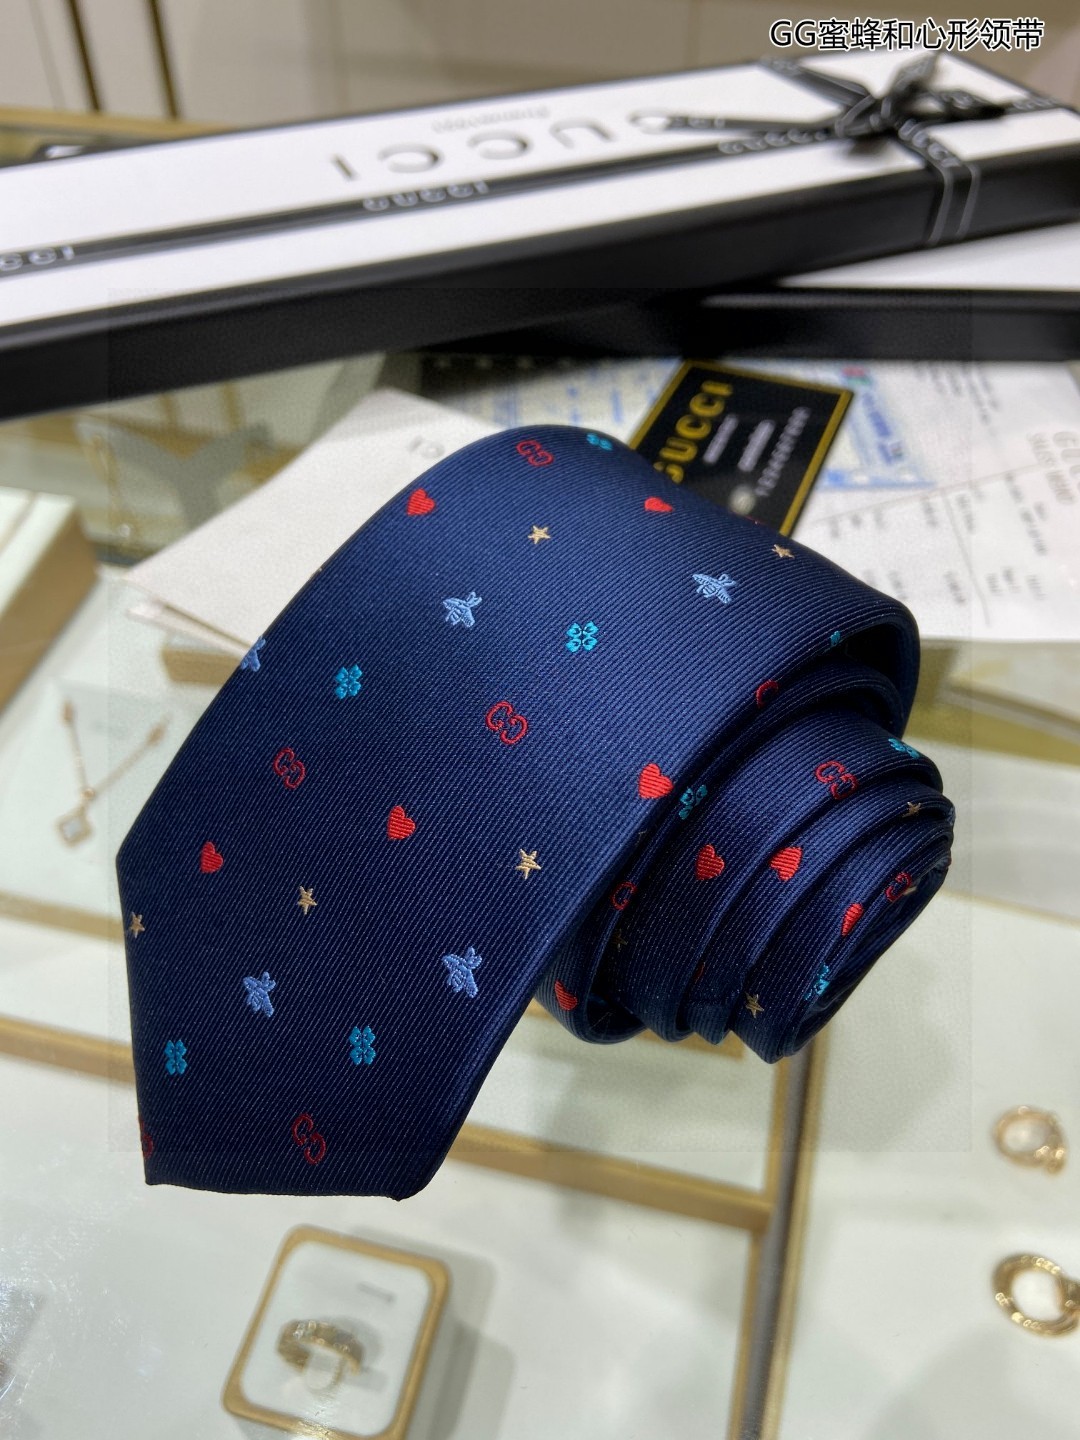 特价G家男士领带系列GG蜜蜂和心形领带稀有采用经典主题动物绣花展现精湛手工与时尚优雅的理想选择这款领带将